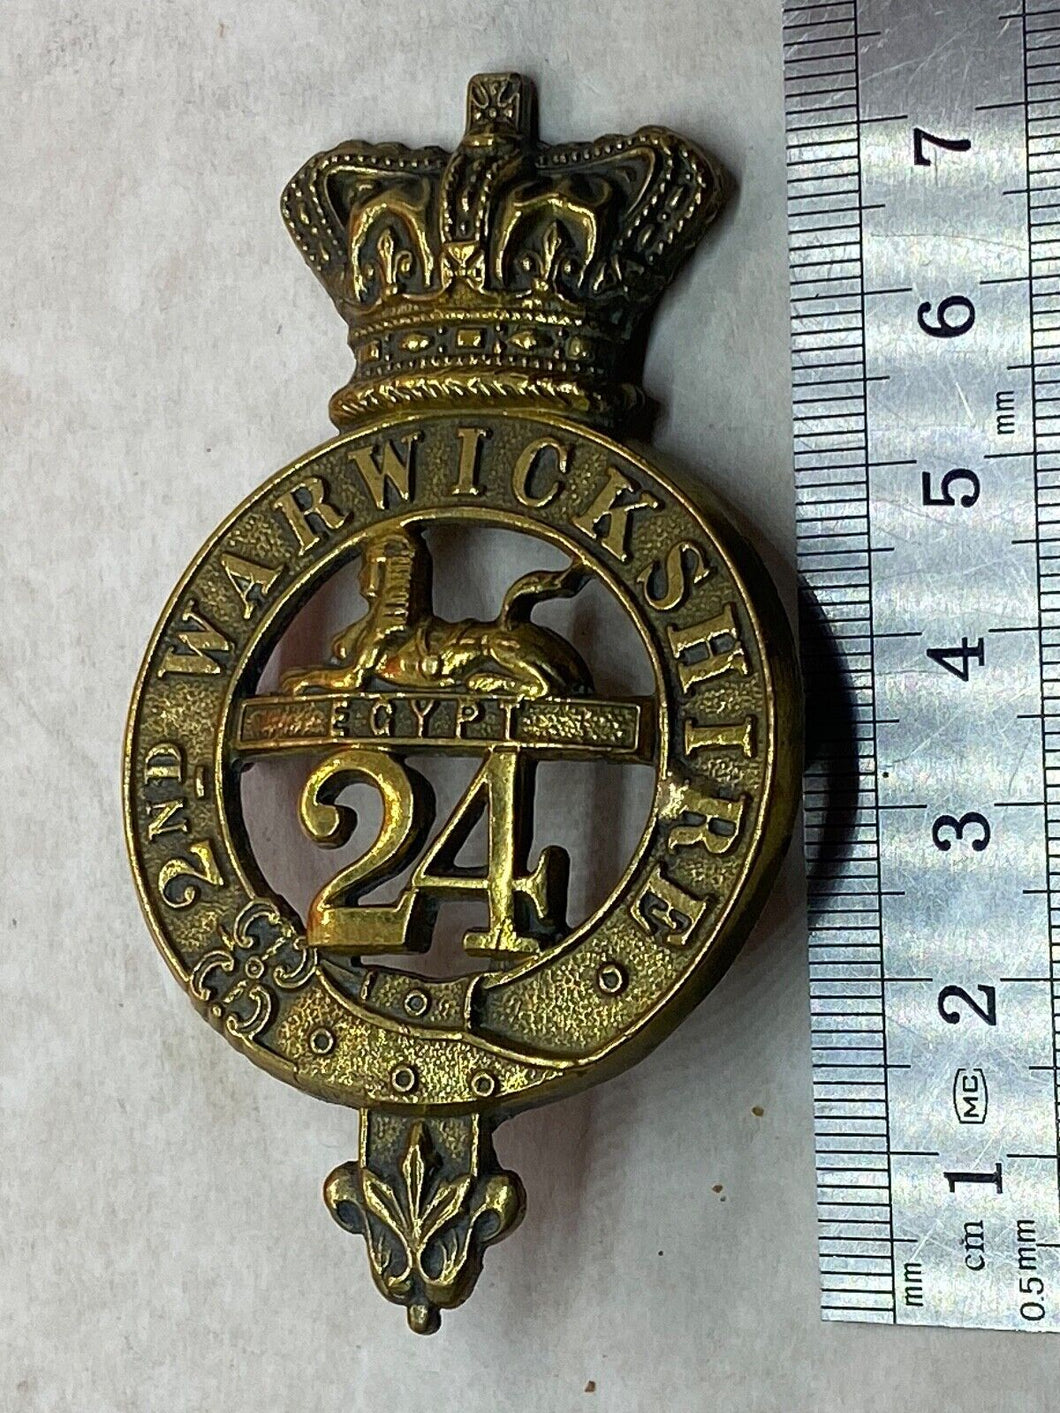 British Army Victorian Era 24th / 2nd Warwickshire Regiment Glengarry Badge